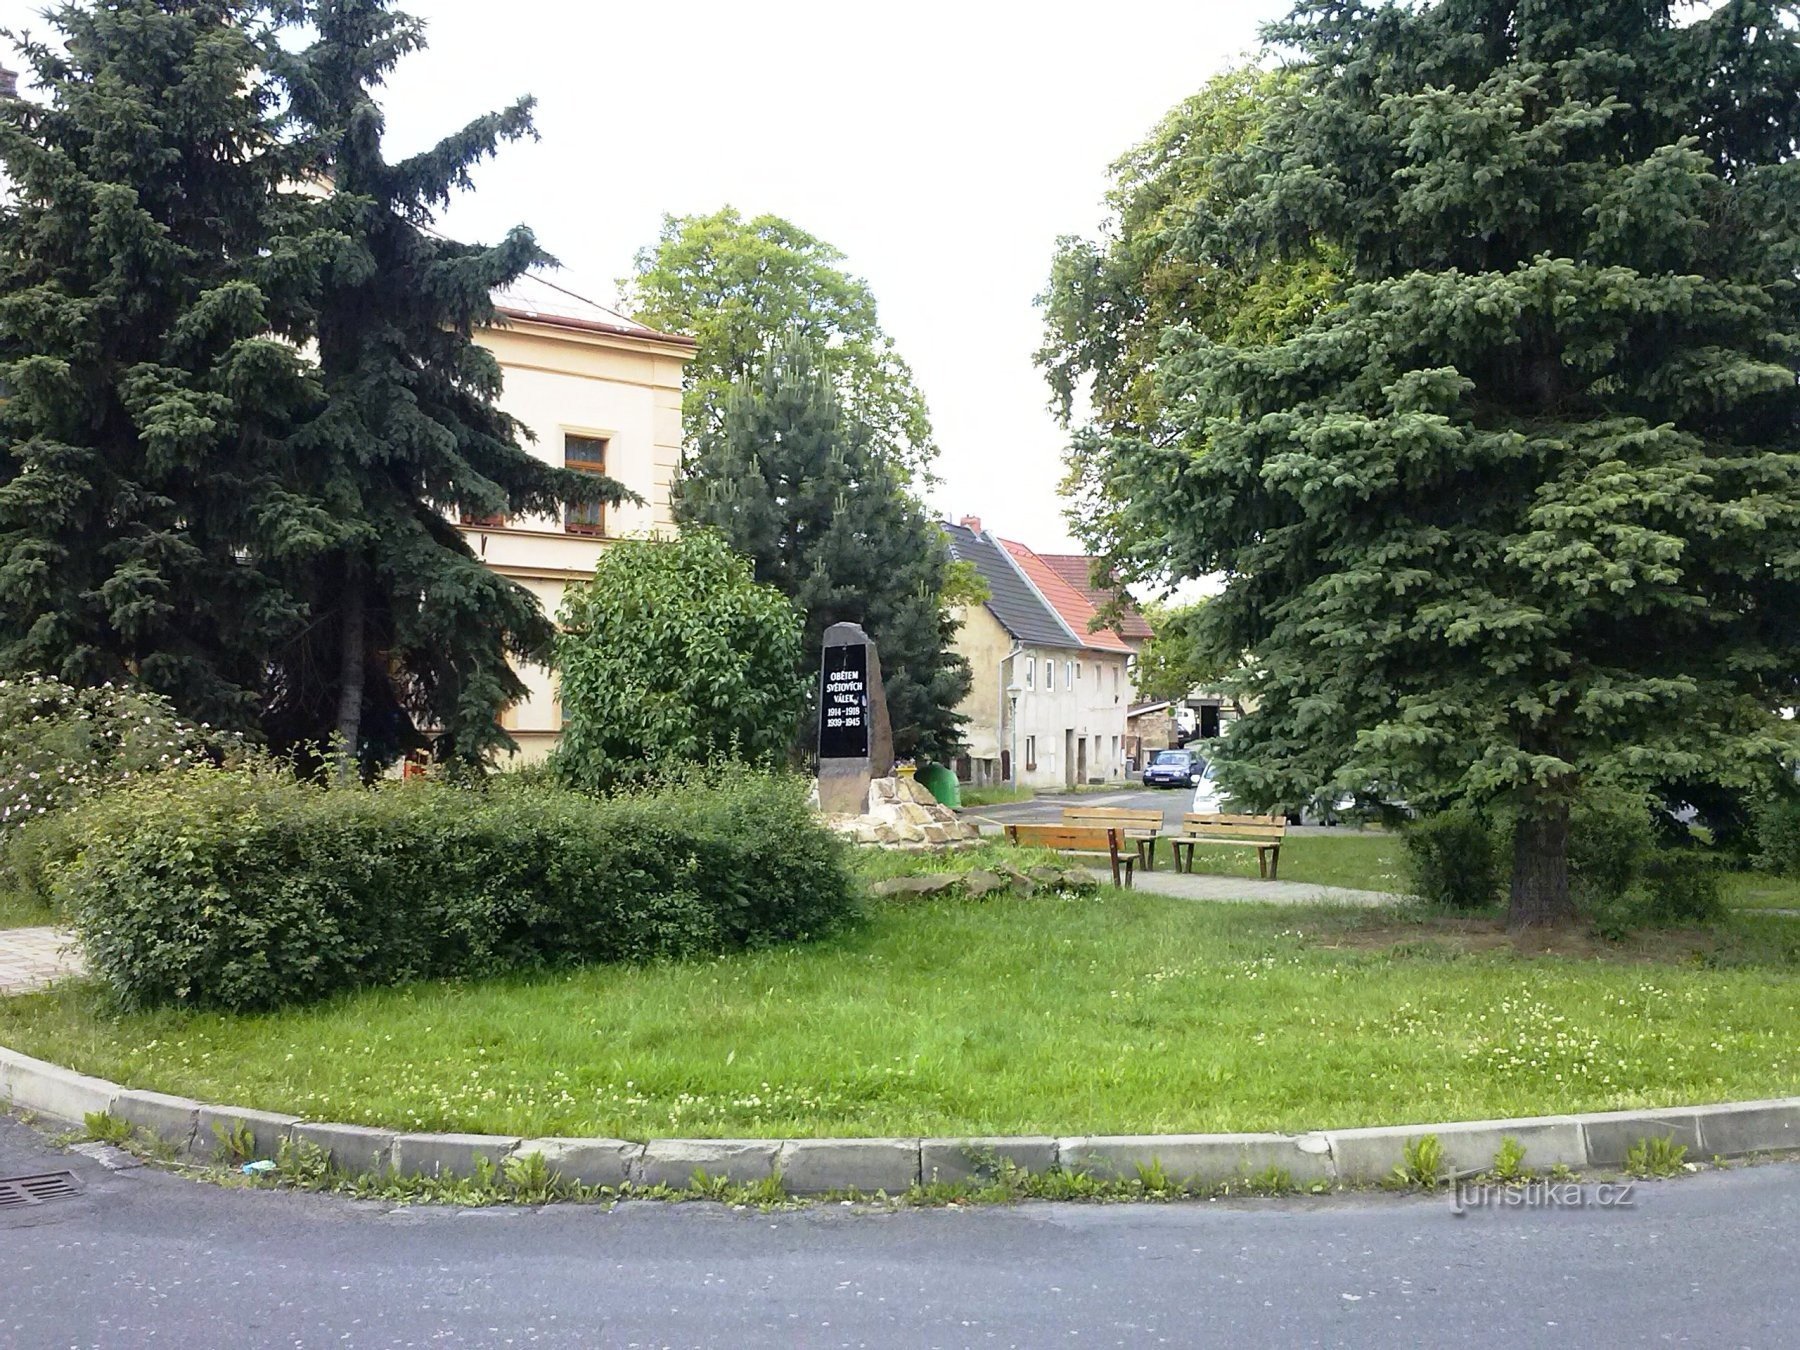 2. Ein Sattelauflieger in Újezdeček mit einem Denkmal